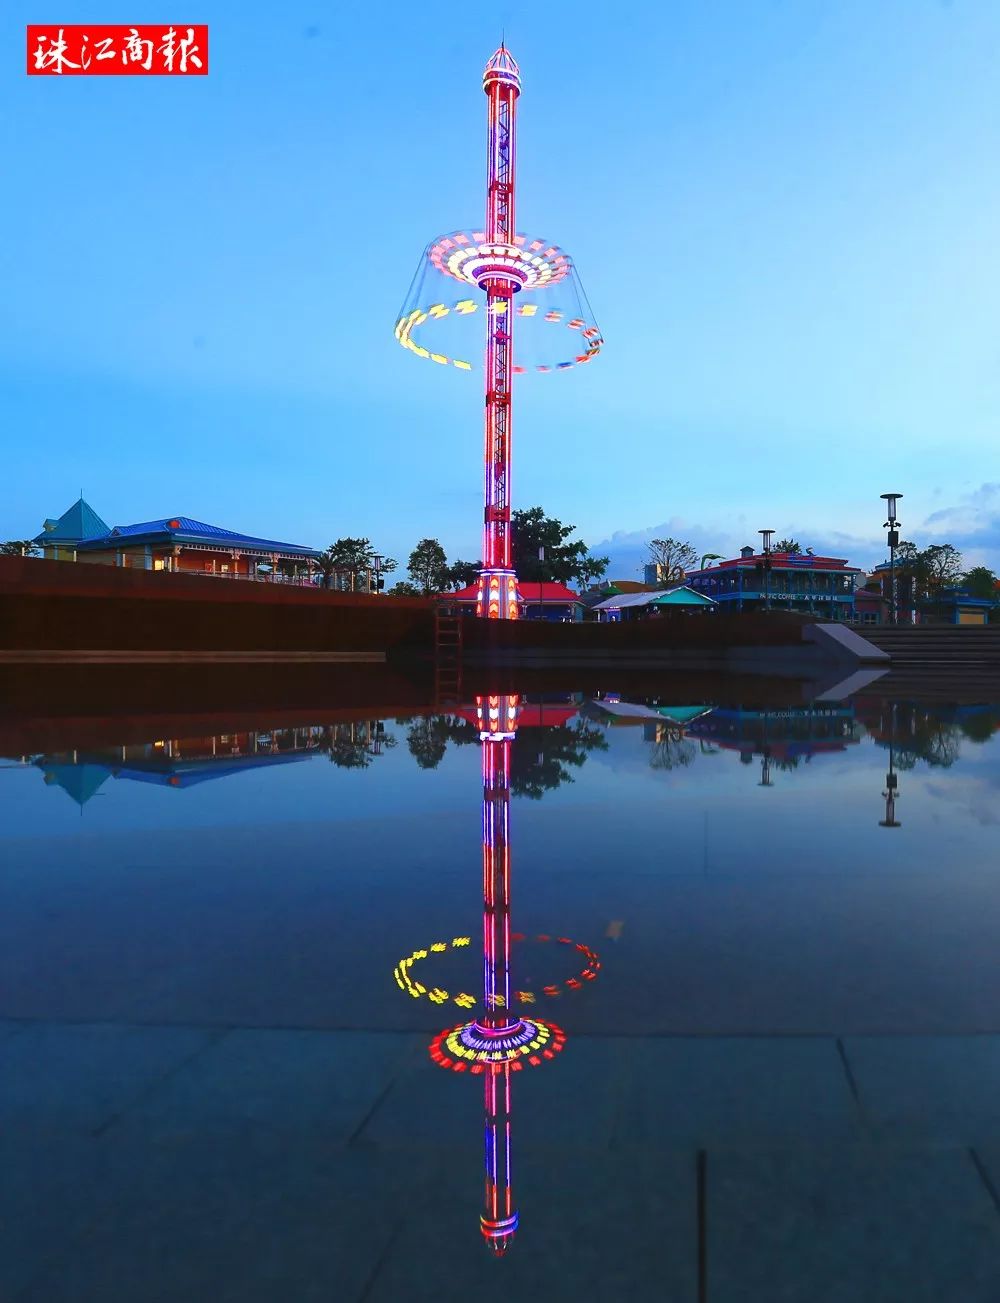 雷神之锤机动项目高达99米的顺德眼摩天轮欢乐时光主题公园汇聚了超